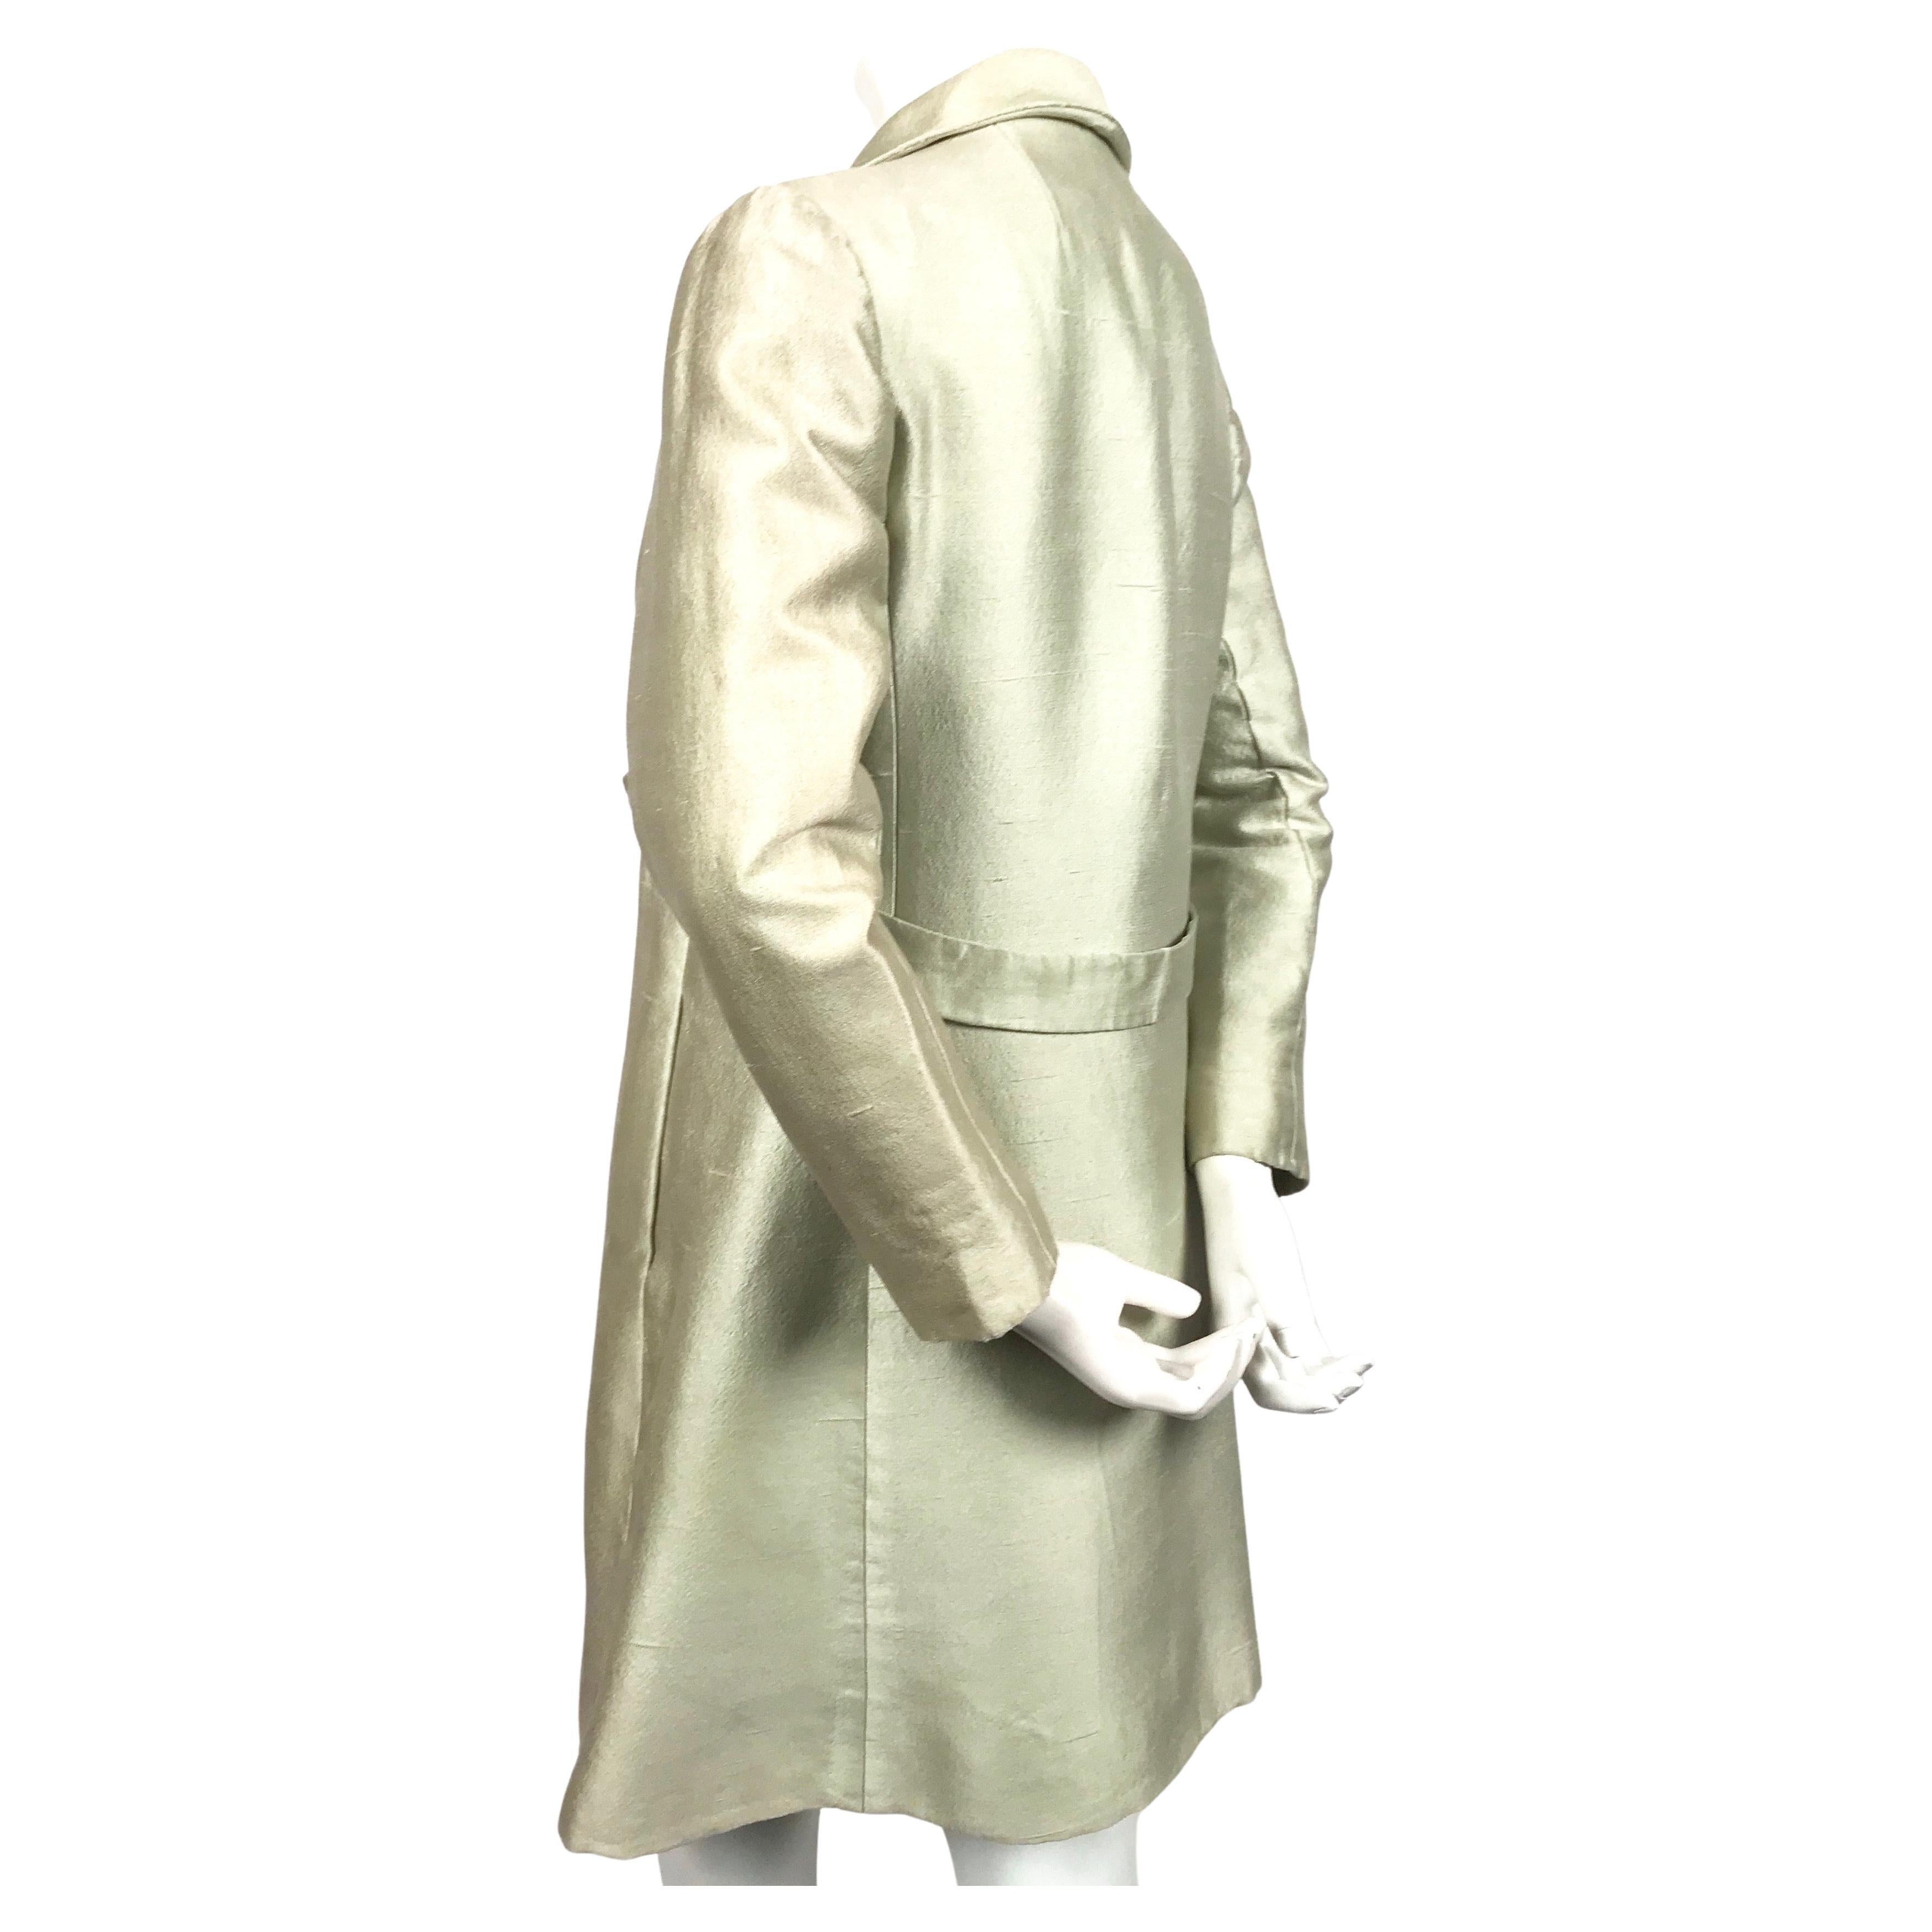 Manteau en soie vert menthe haute couture conçu par Cristobal Balenciaga pour Eisa datant des années 1960.

Mesures approximatives : épaules 15